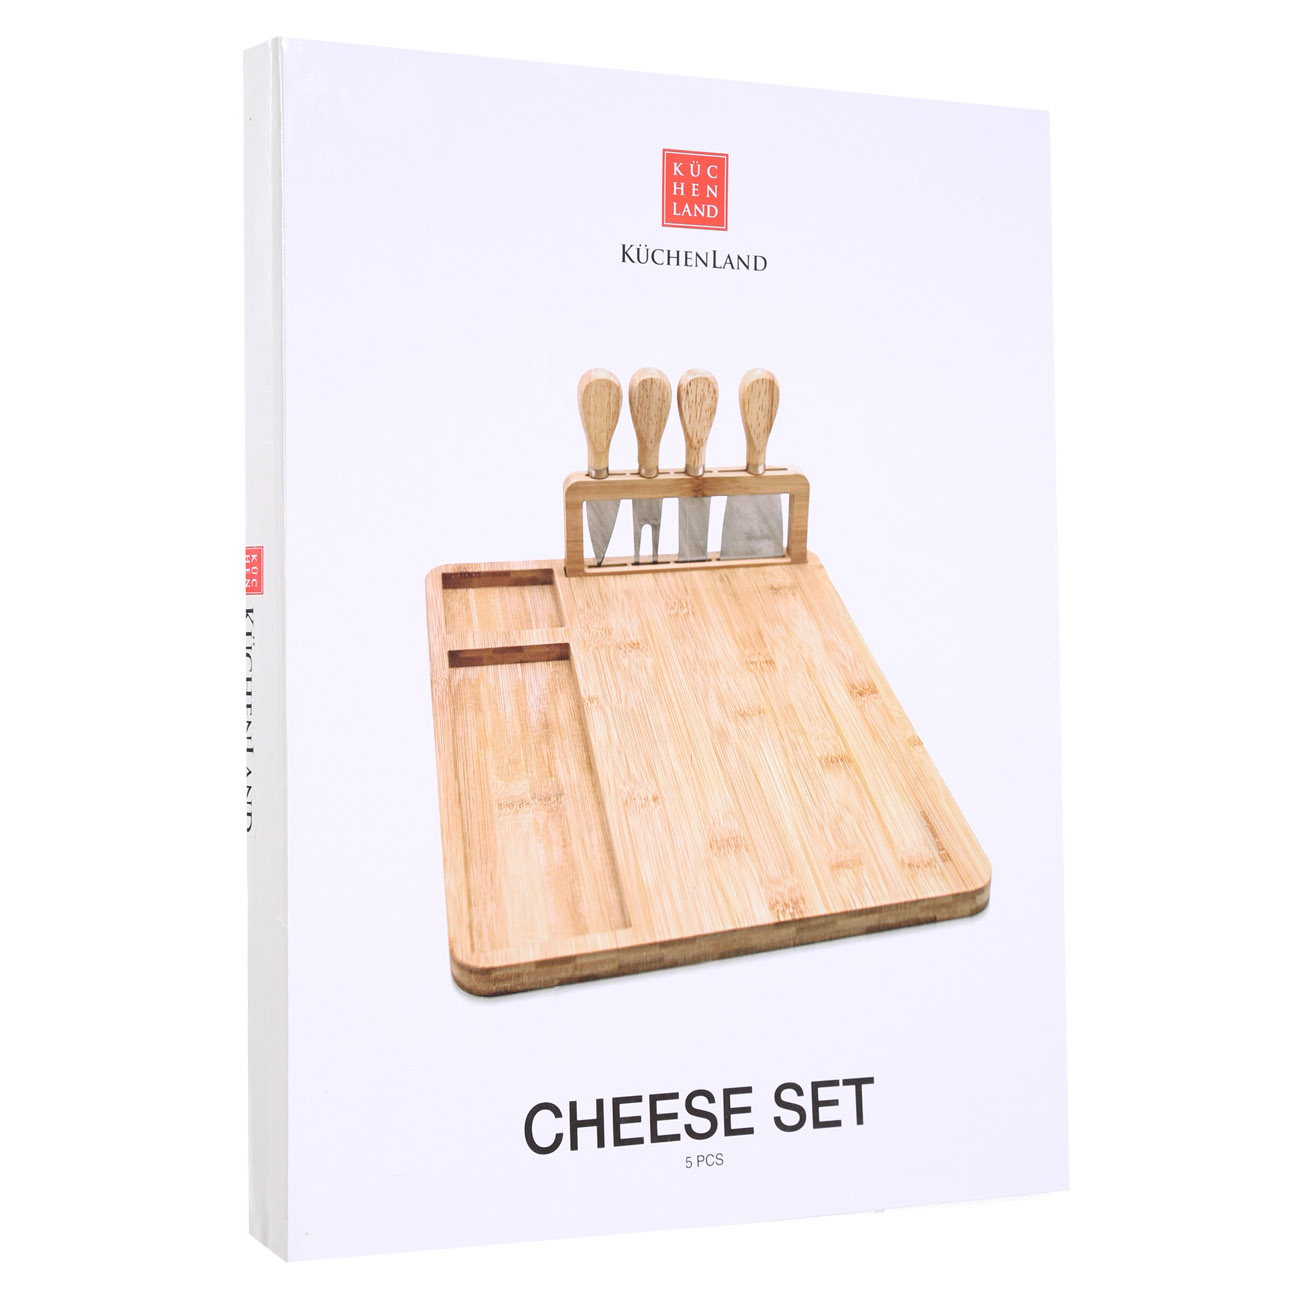 Набор для сыра, 5 пр, доска с отделением, сталь/бамбук, Cheese изображение № 8